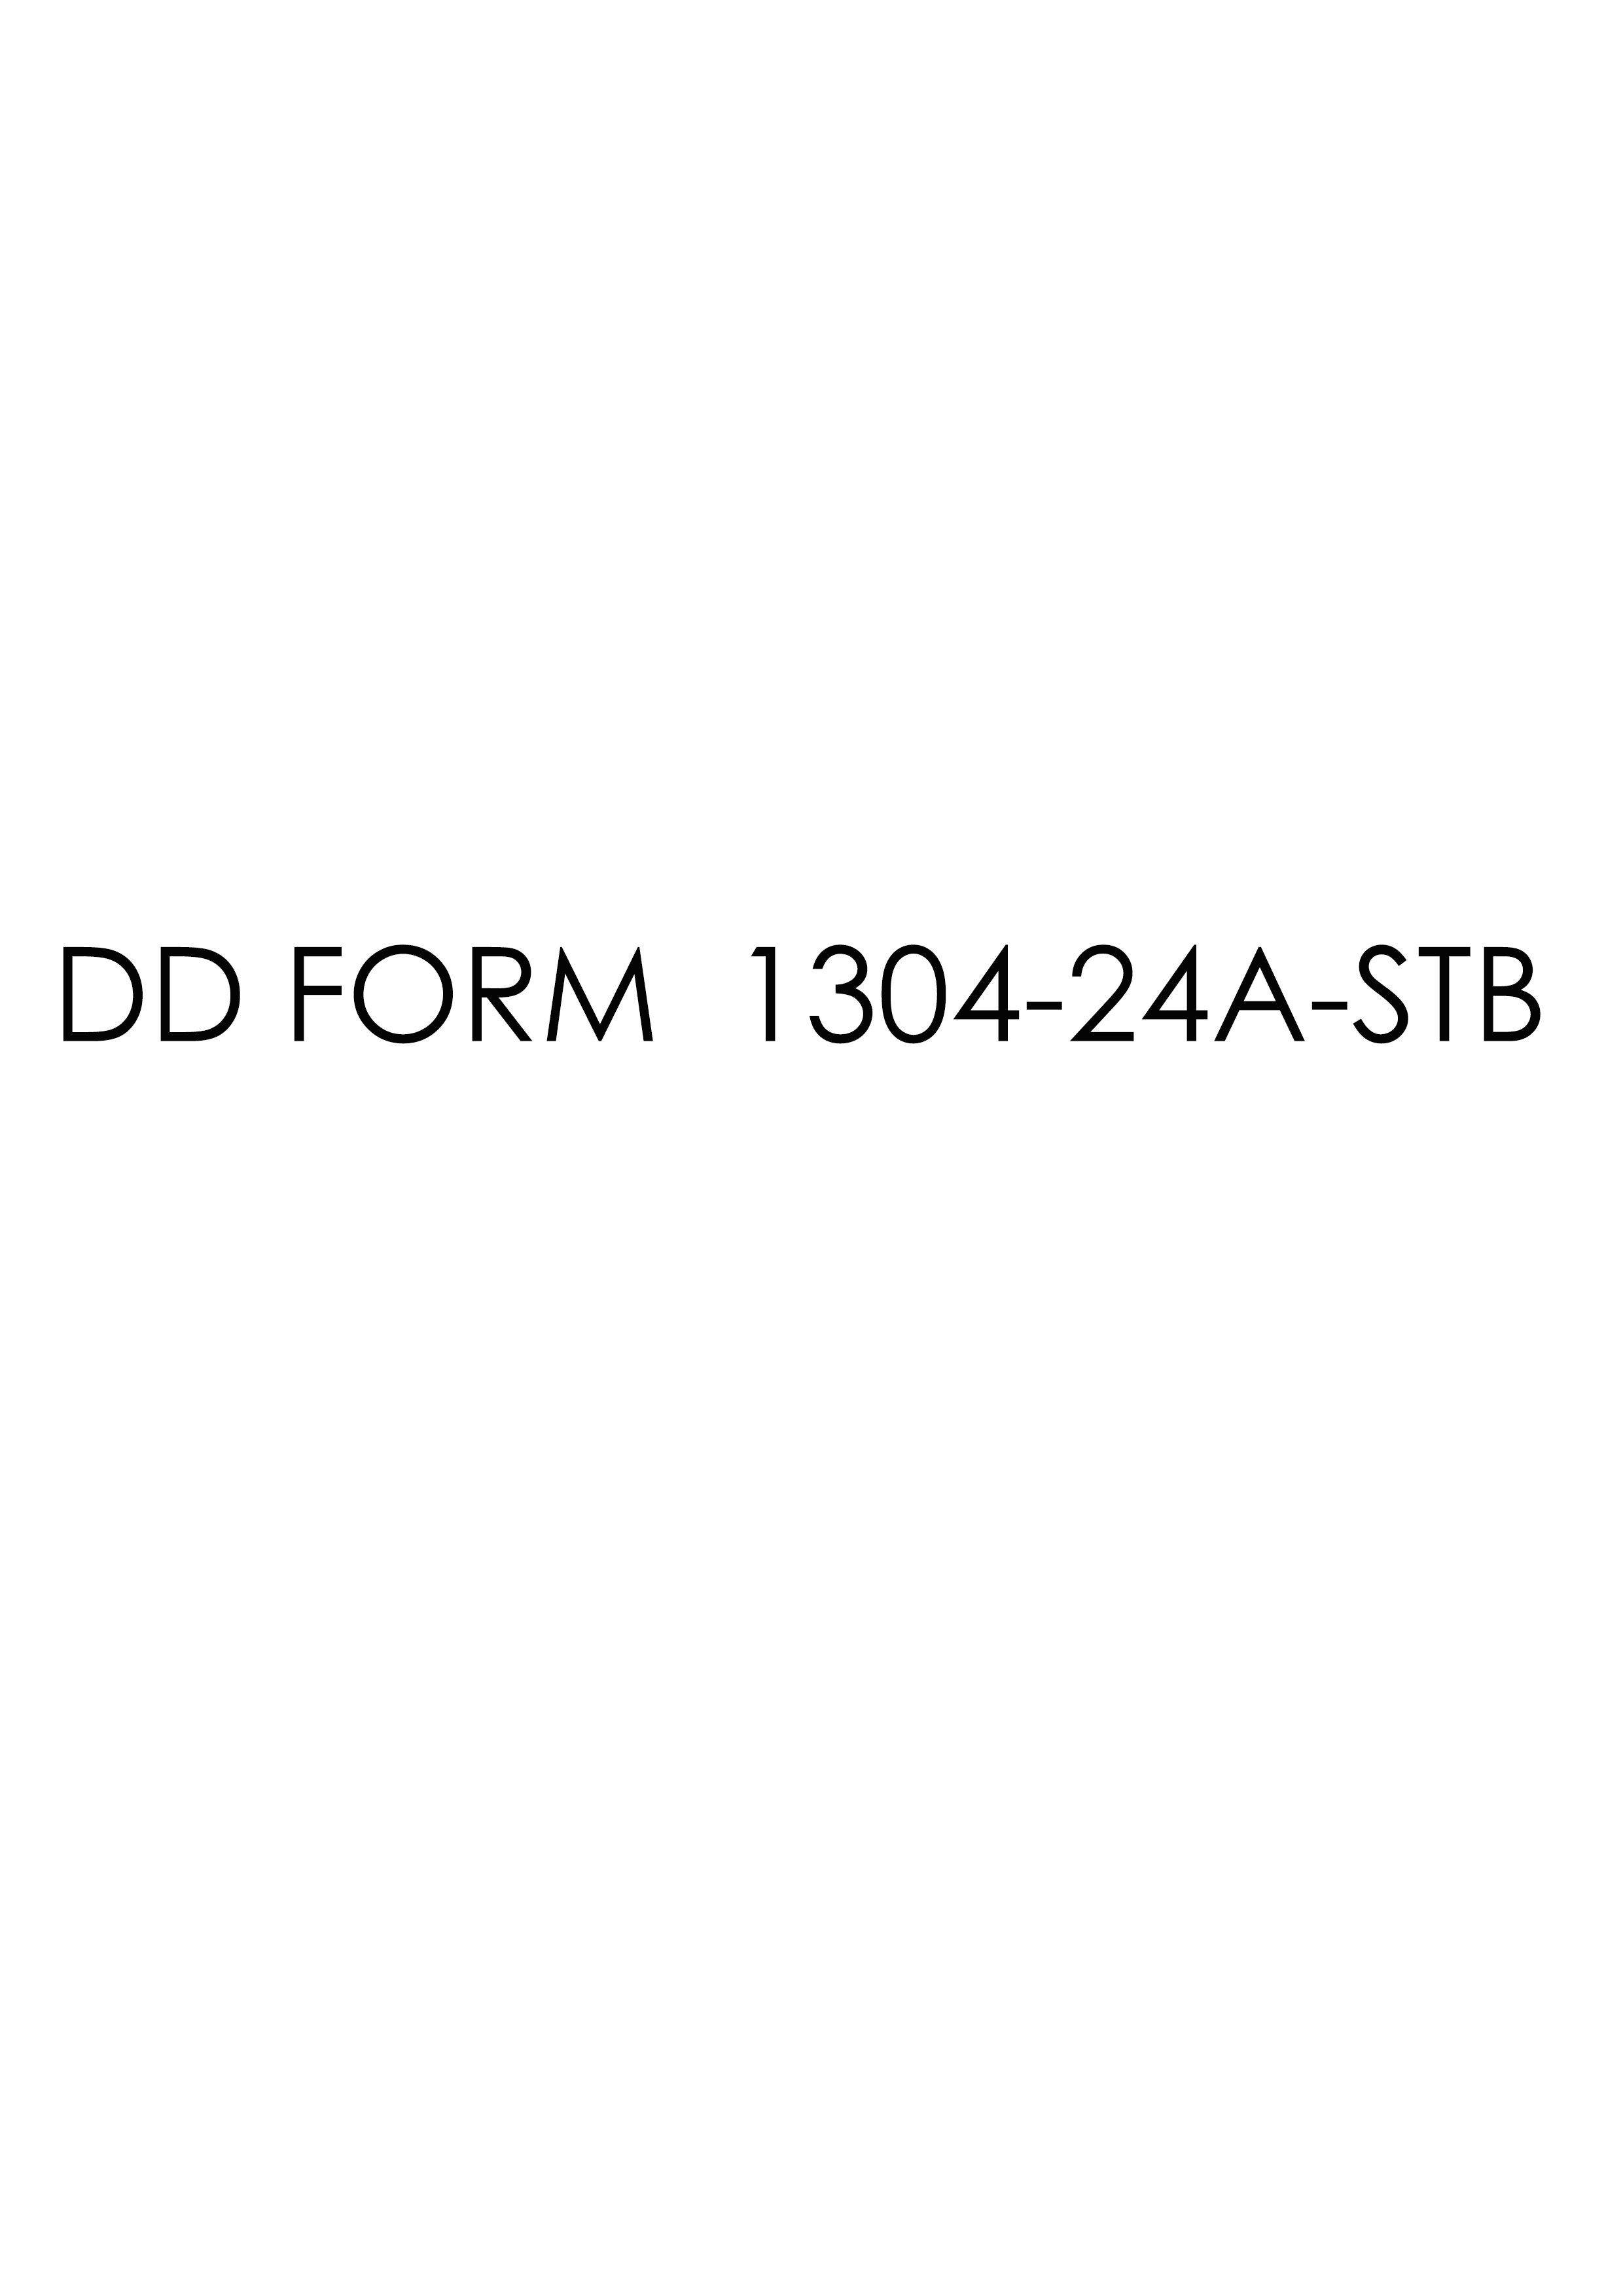 Download dd Form 1304-24A-STB